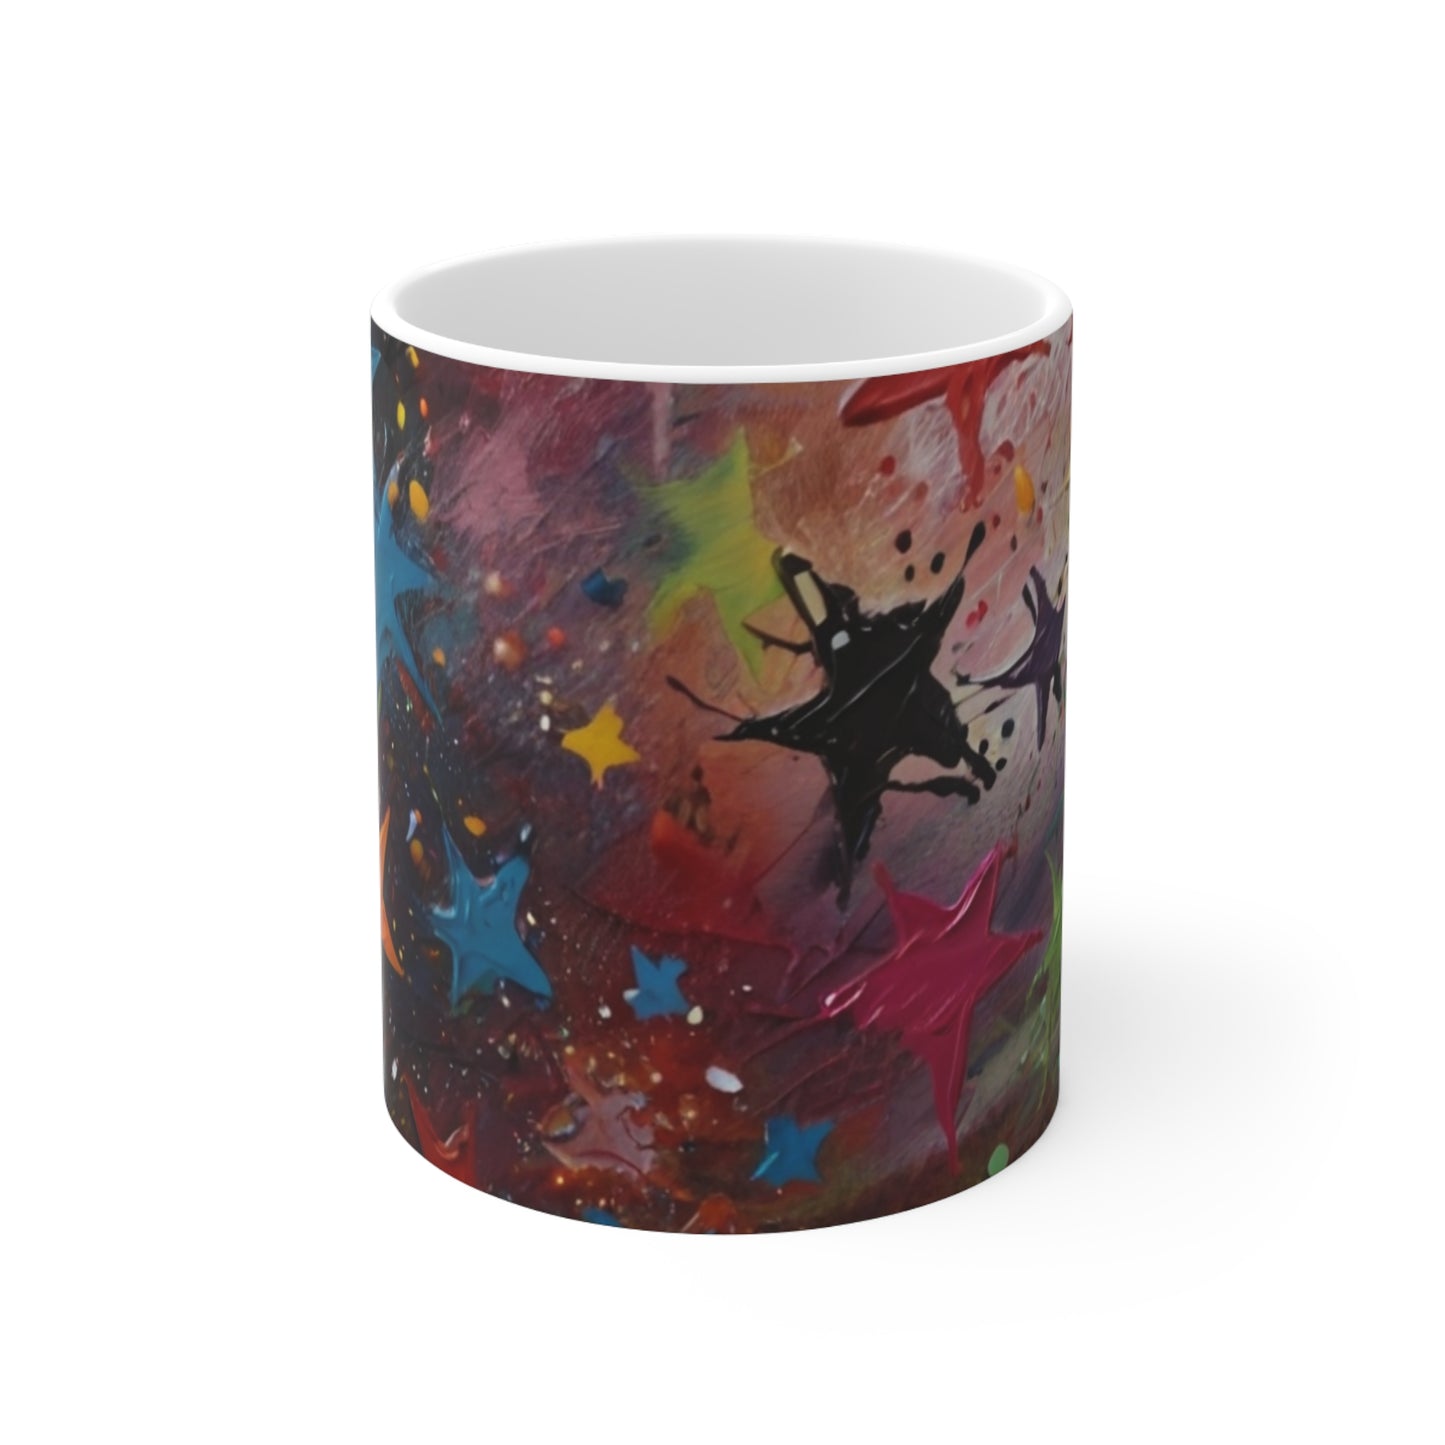 Messy Colourful Stars Mug - Ceramic Coffee Mug 11oz